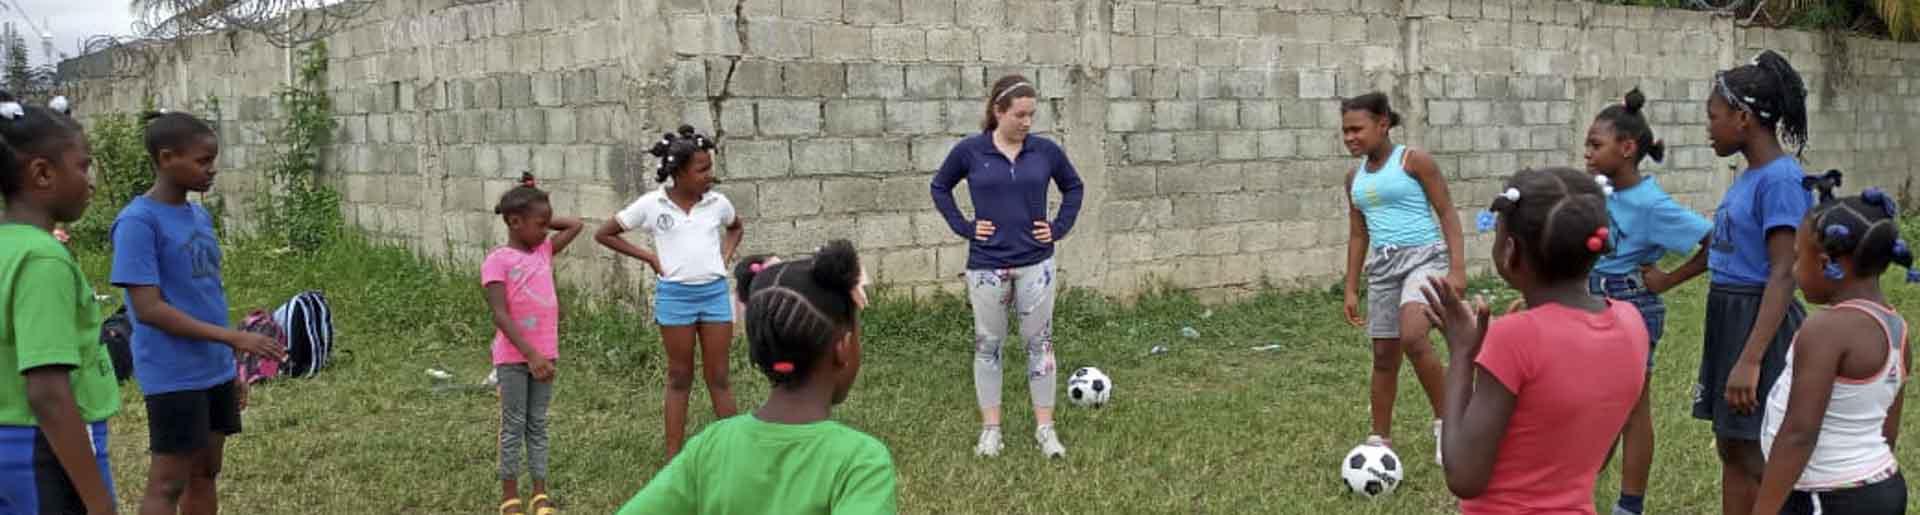 凯蒂·贝尔德与拉瓦所在的两所当地学校的女孩们一起参加足球训练